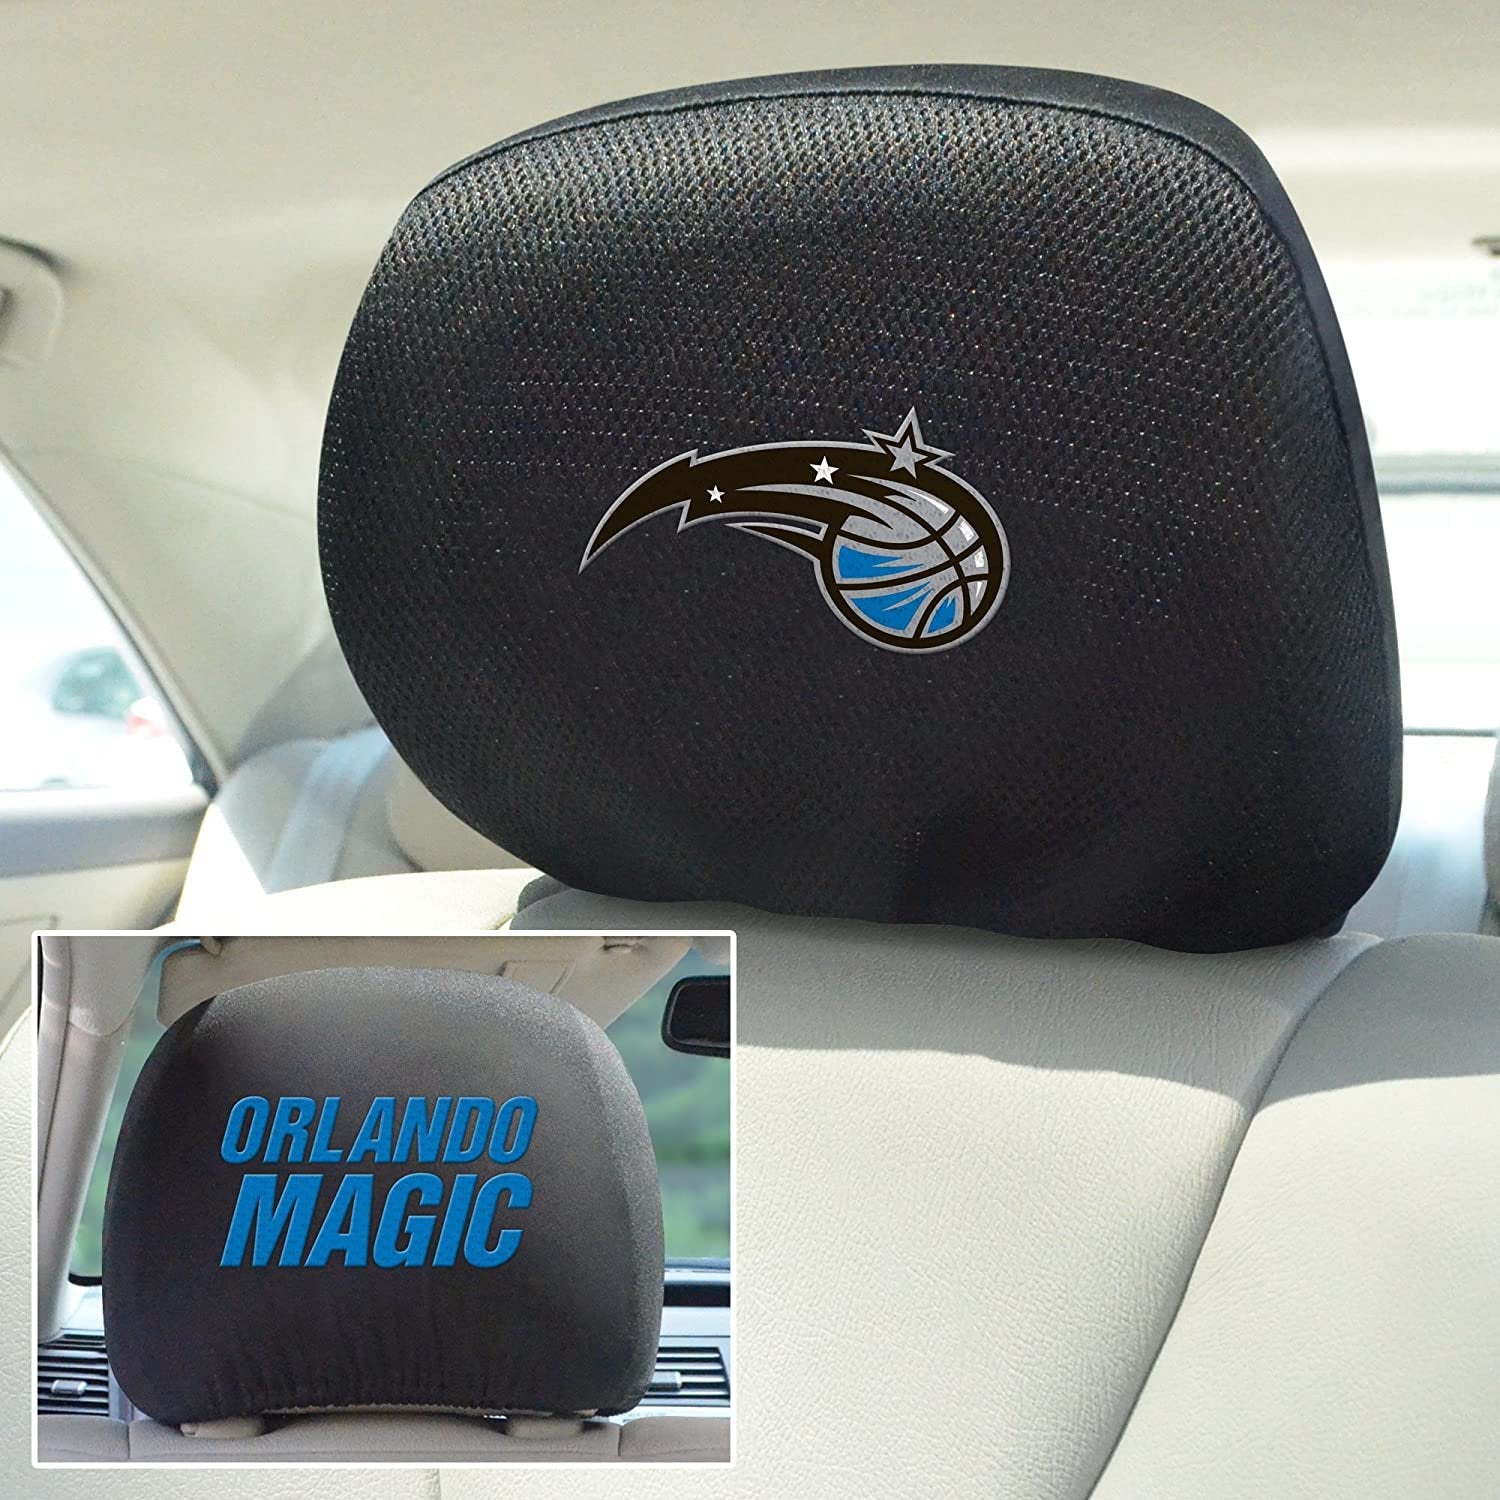 Orlando Magic Pair of Premium Auto Head Rest Covers, Embroidered, Black Elastic, 14x10 Inch